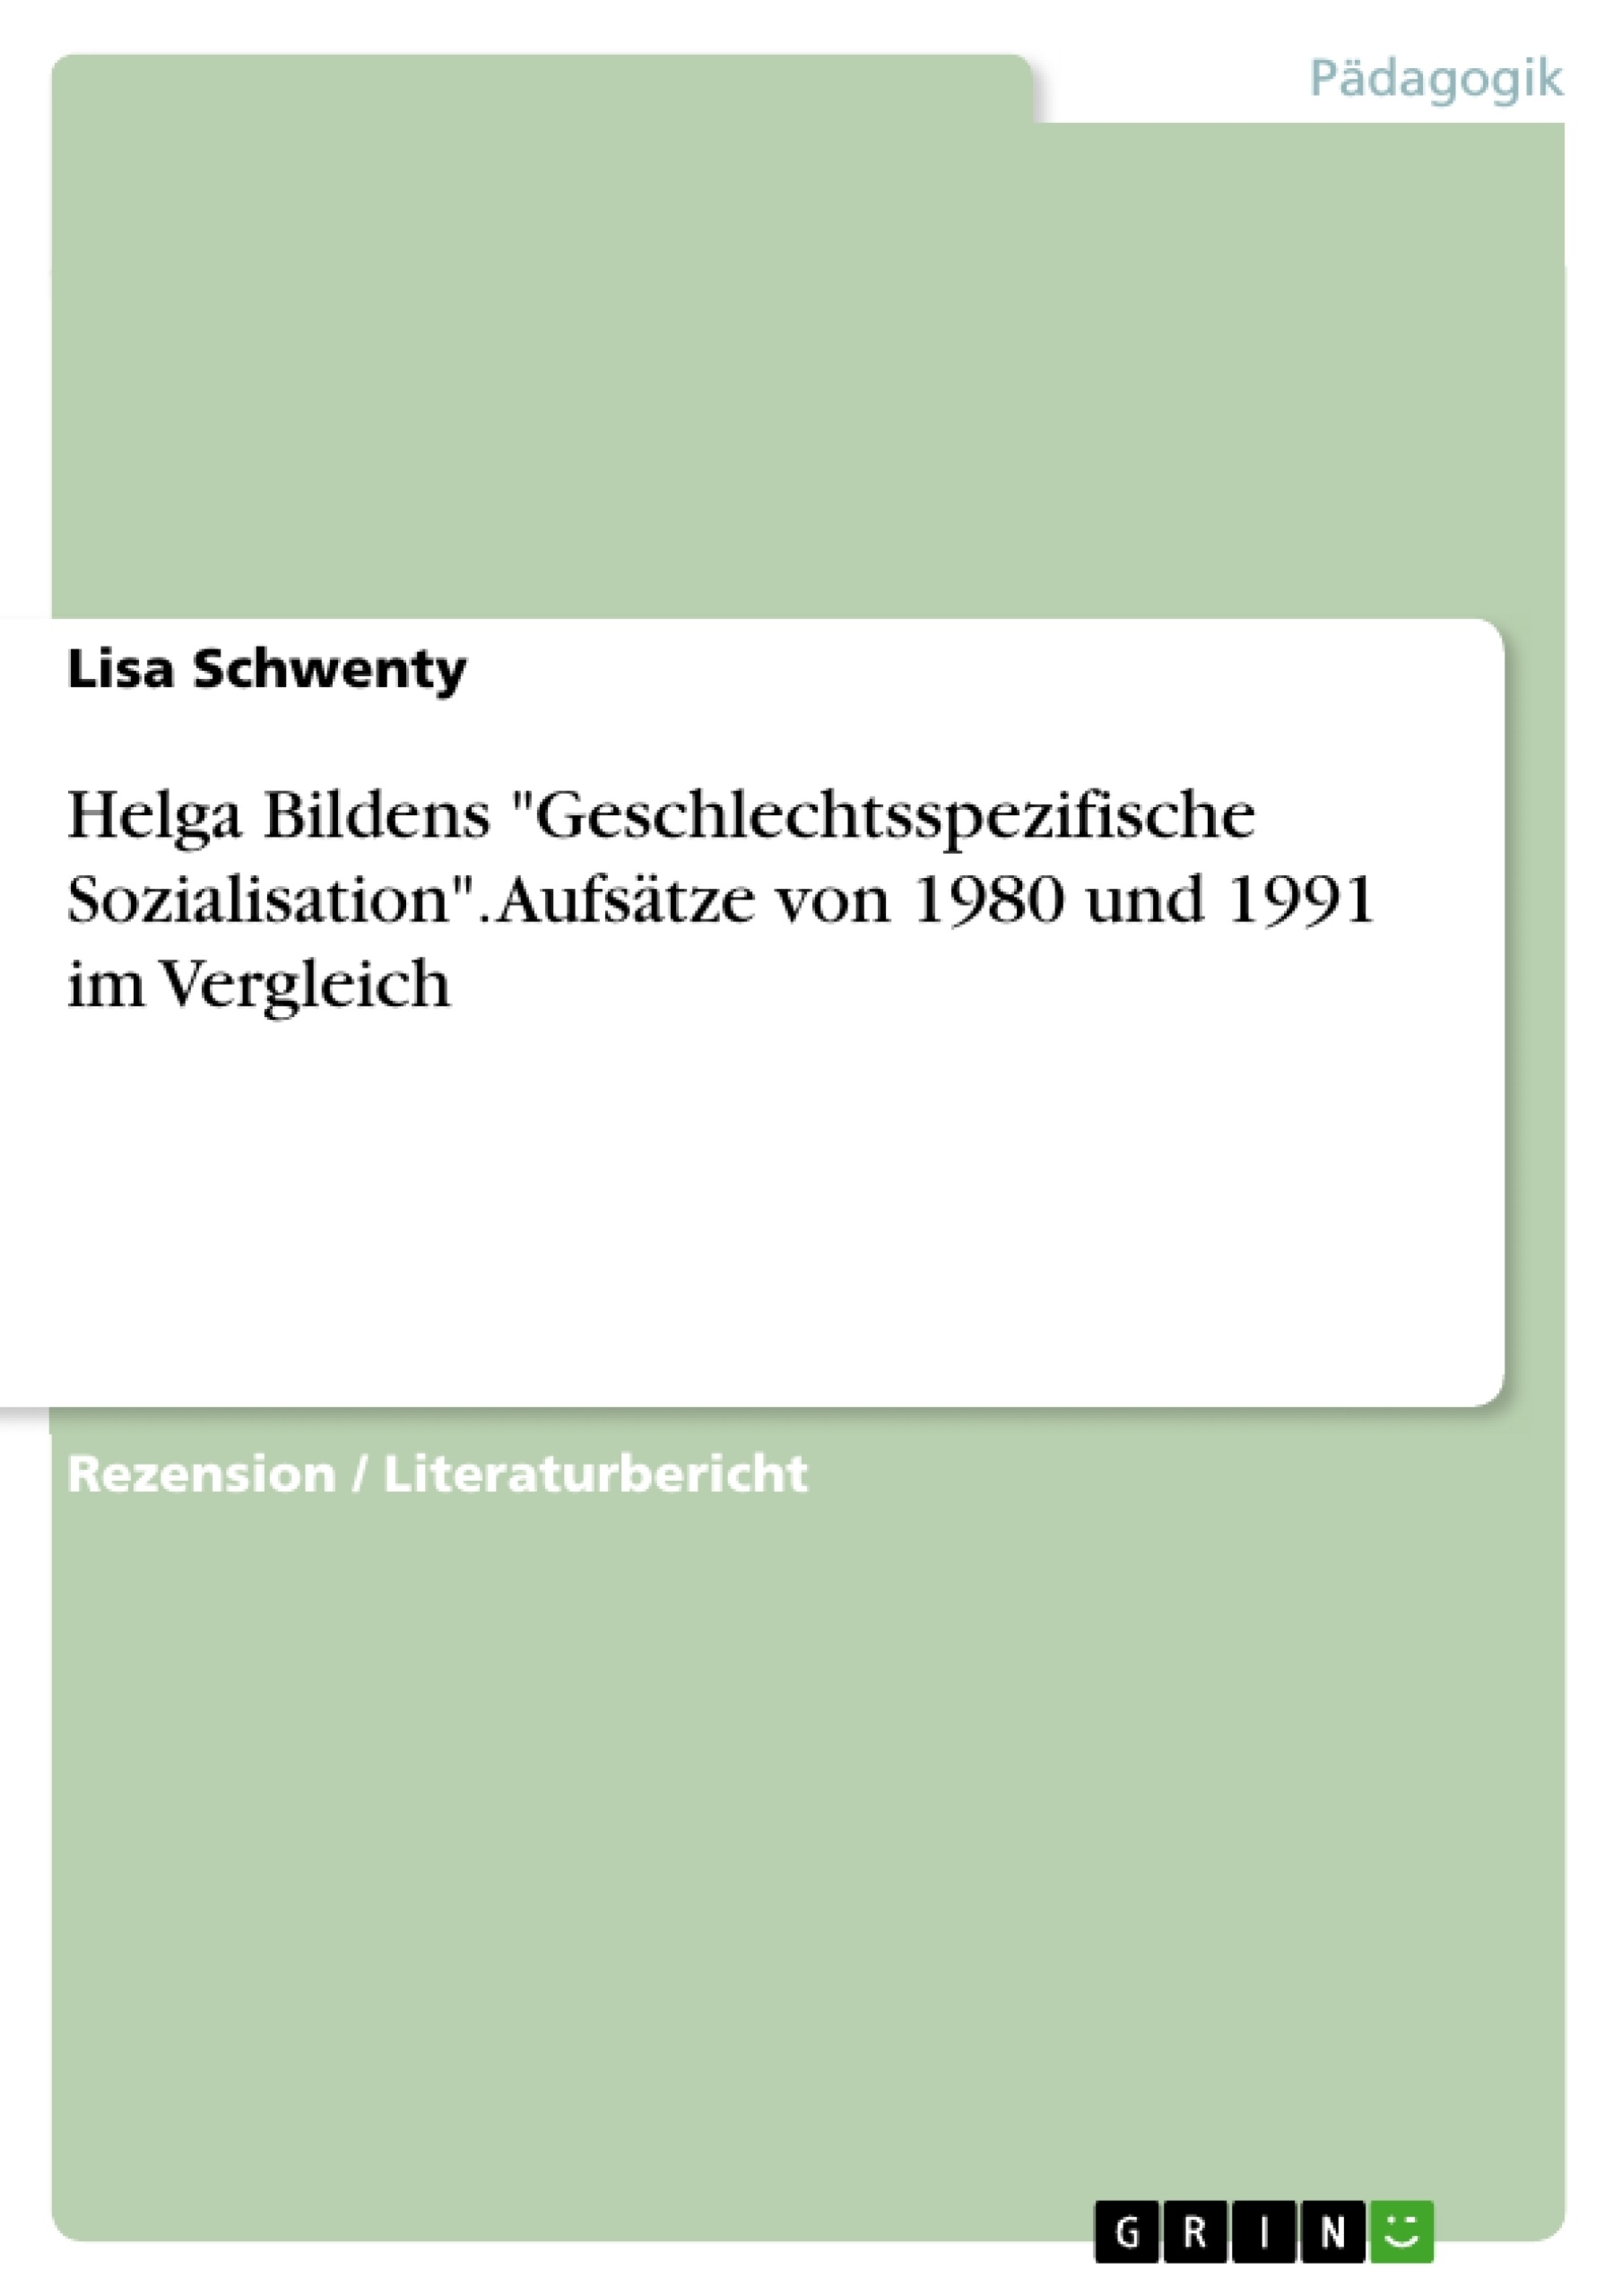 Titel: Helga Bildens "Geschlechtsspezifische Sozialisation". Aufsätze von 1980 und 1991 im Vergleich